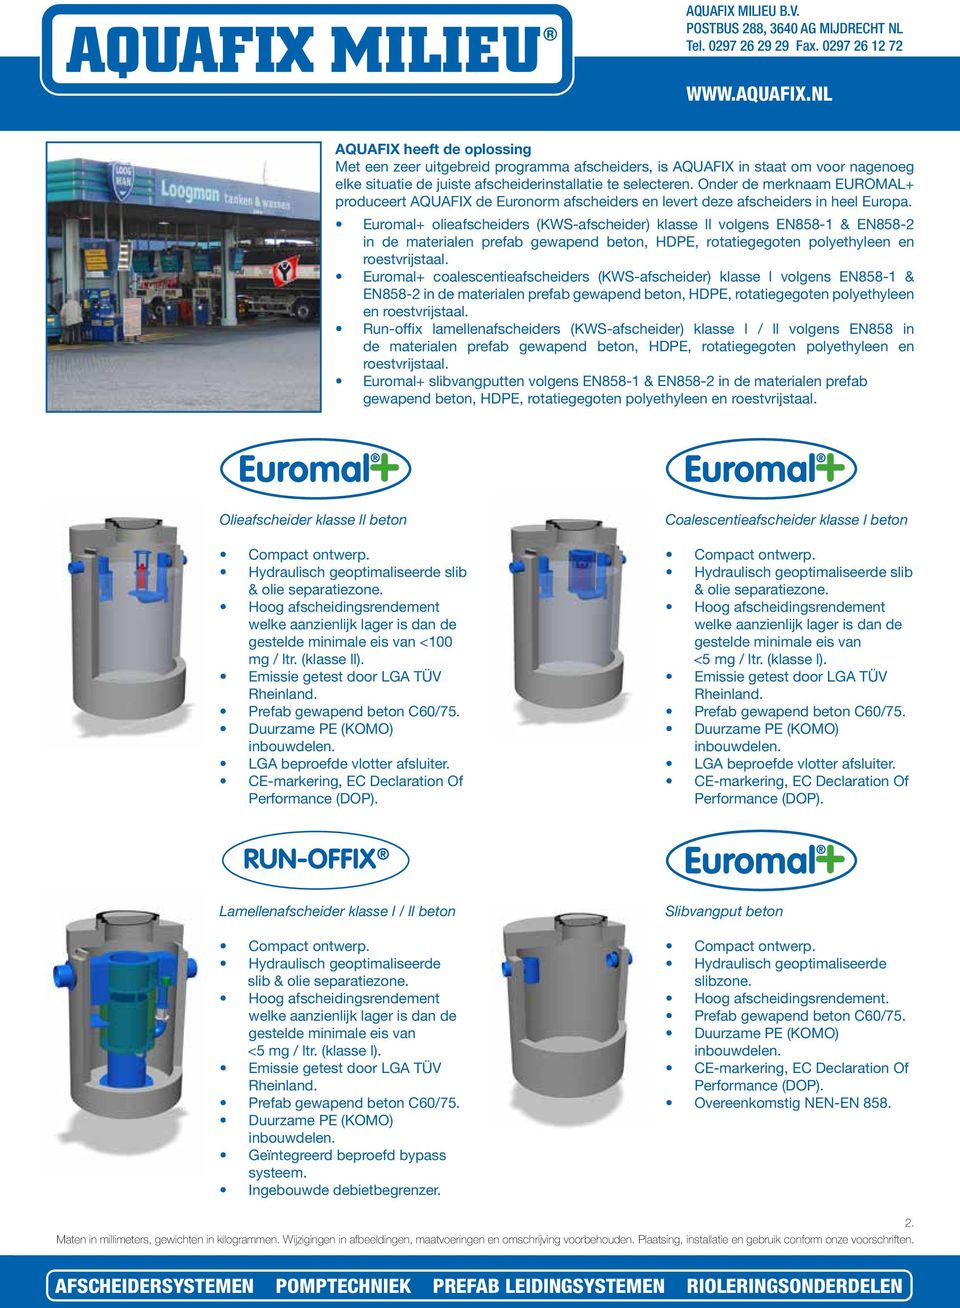 Euromal+ olieafscheiders (KWS-afscheider) klasse ll volgens EN858- & EN858-2 in de materialen prefab gewapend beton, HDPE, rotatiegegoten polyethyleen en roestvrijstaal.